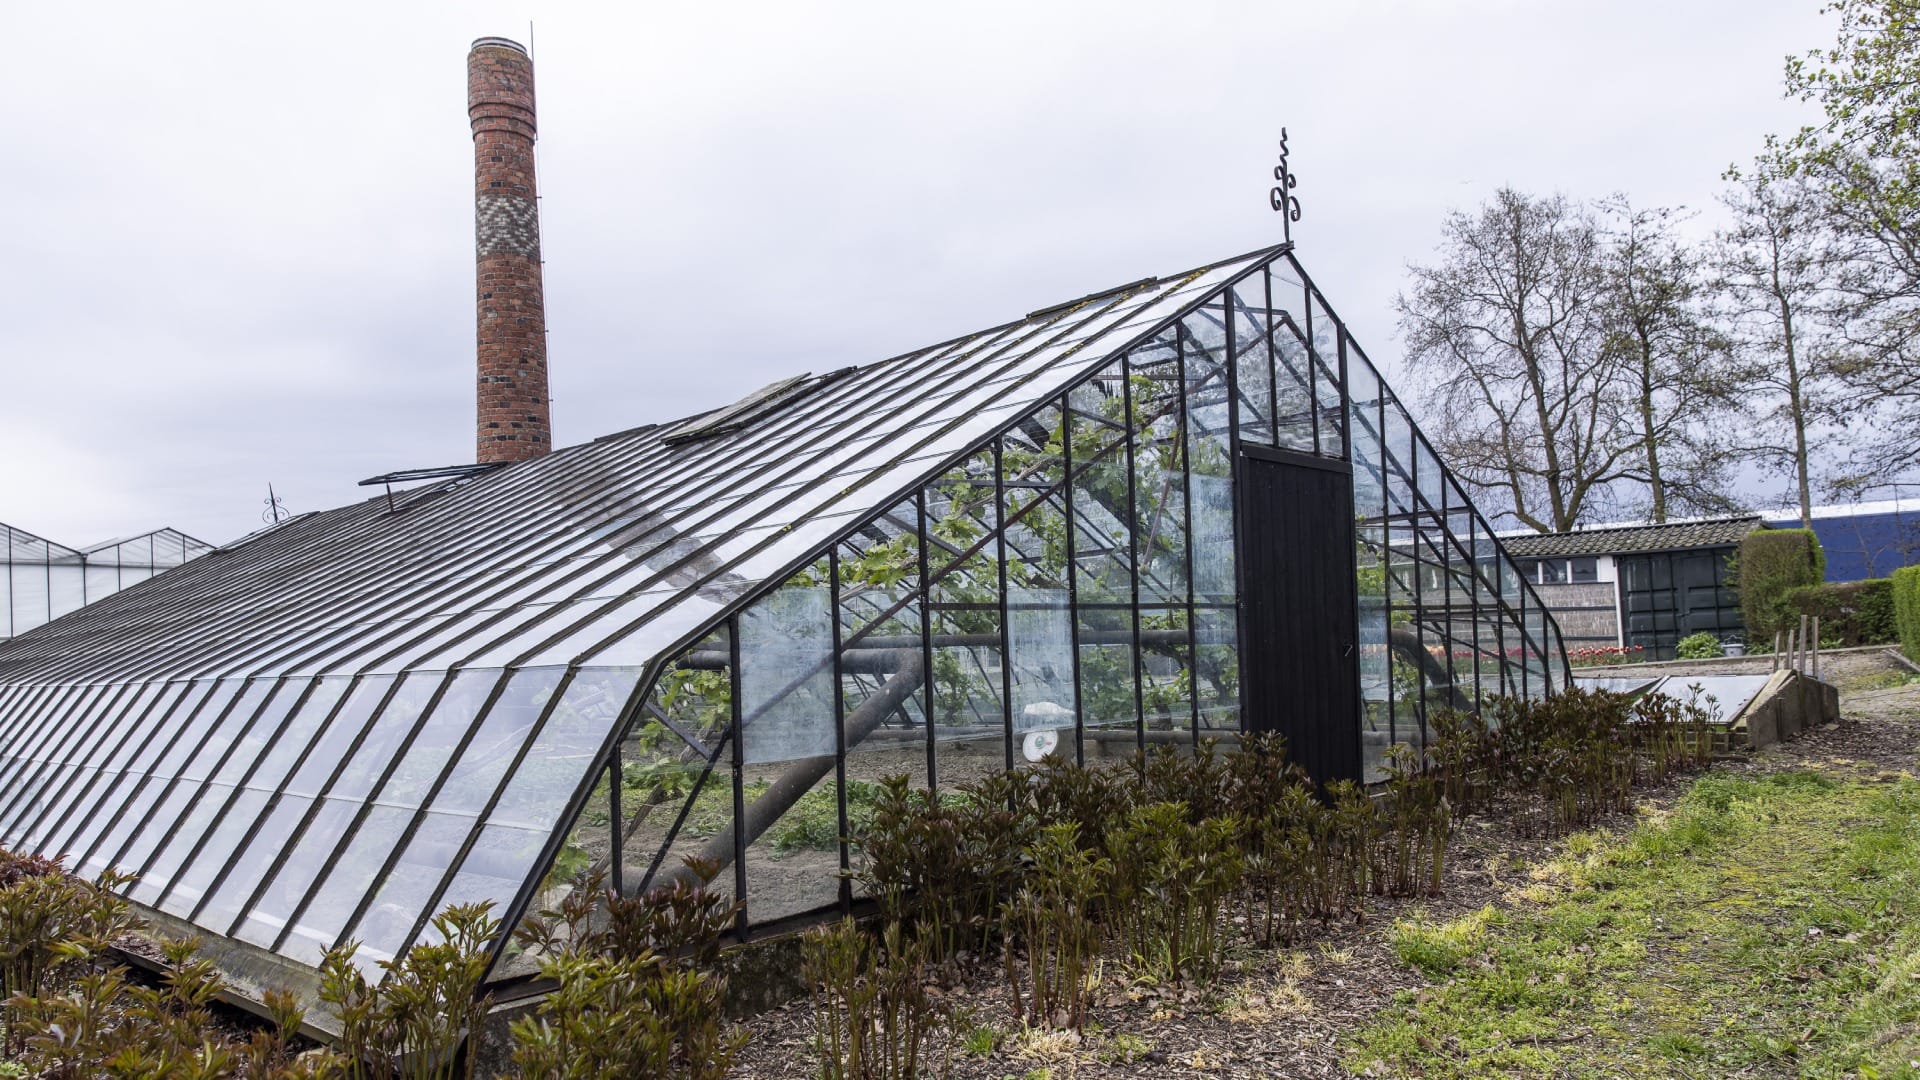 Westlands Museum kniekas geschiedenis van de kas tuinbouw